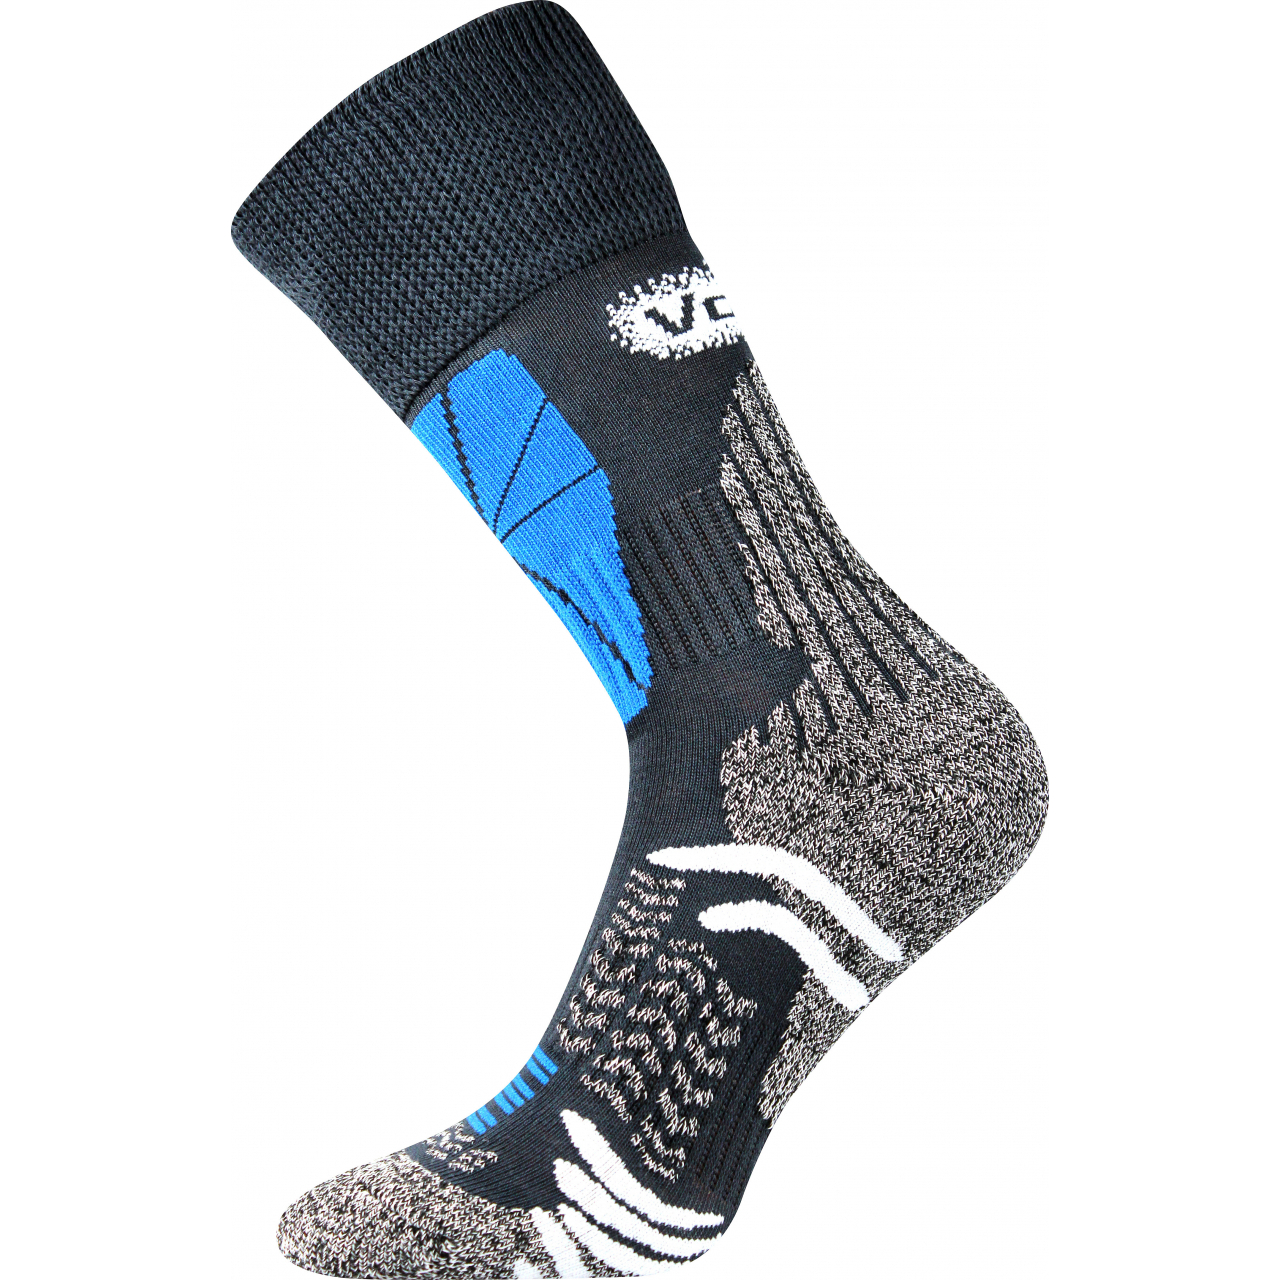 Ponožky sportovní unisex Voxx Solution - tmavě šedé, 43-46